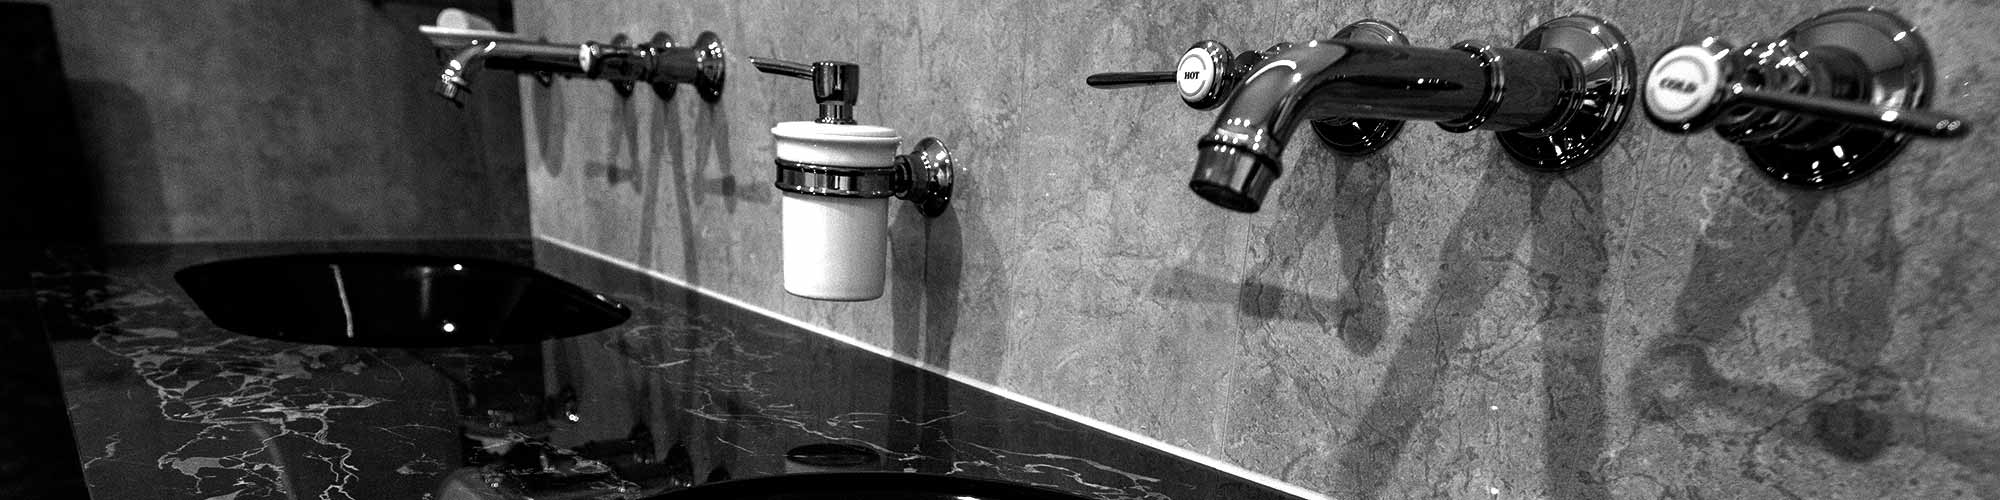 Sanierung von Badezimmer / Gäste- WC- Anlagen